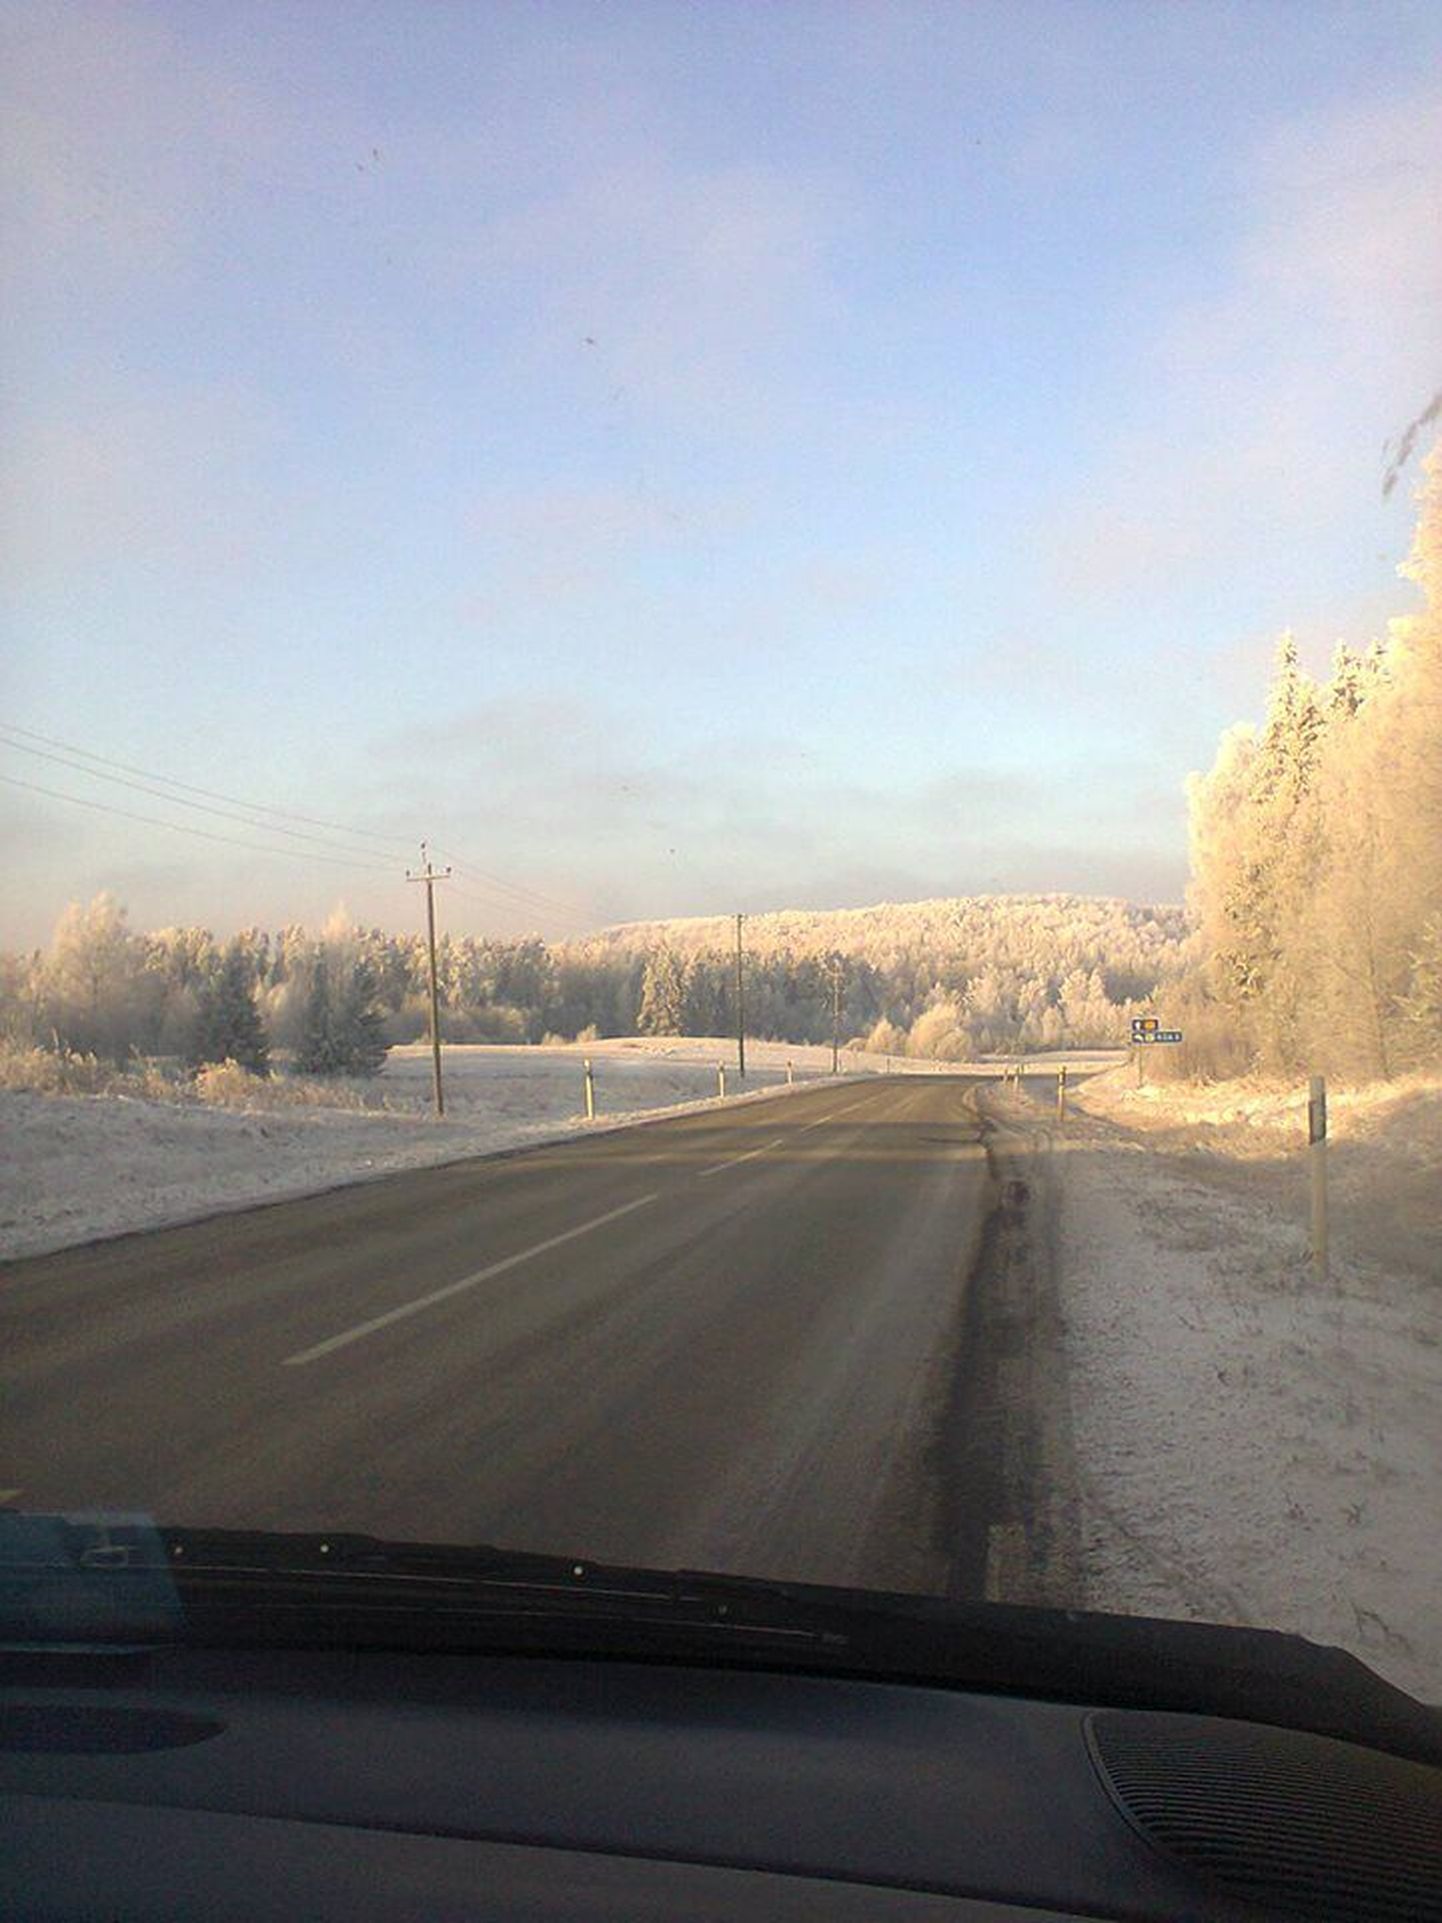 Ants Väärsi sõidab peaaegu iga päev Eestimaa teedel, et abivajajaid arsti juurde viia. Foto on tehtud Antsu autoaknast 19. jaanuaril.